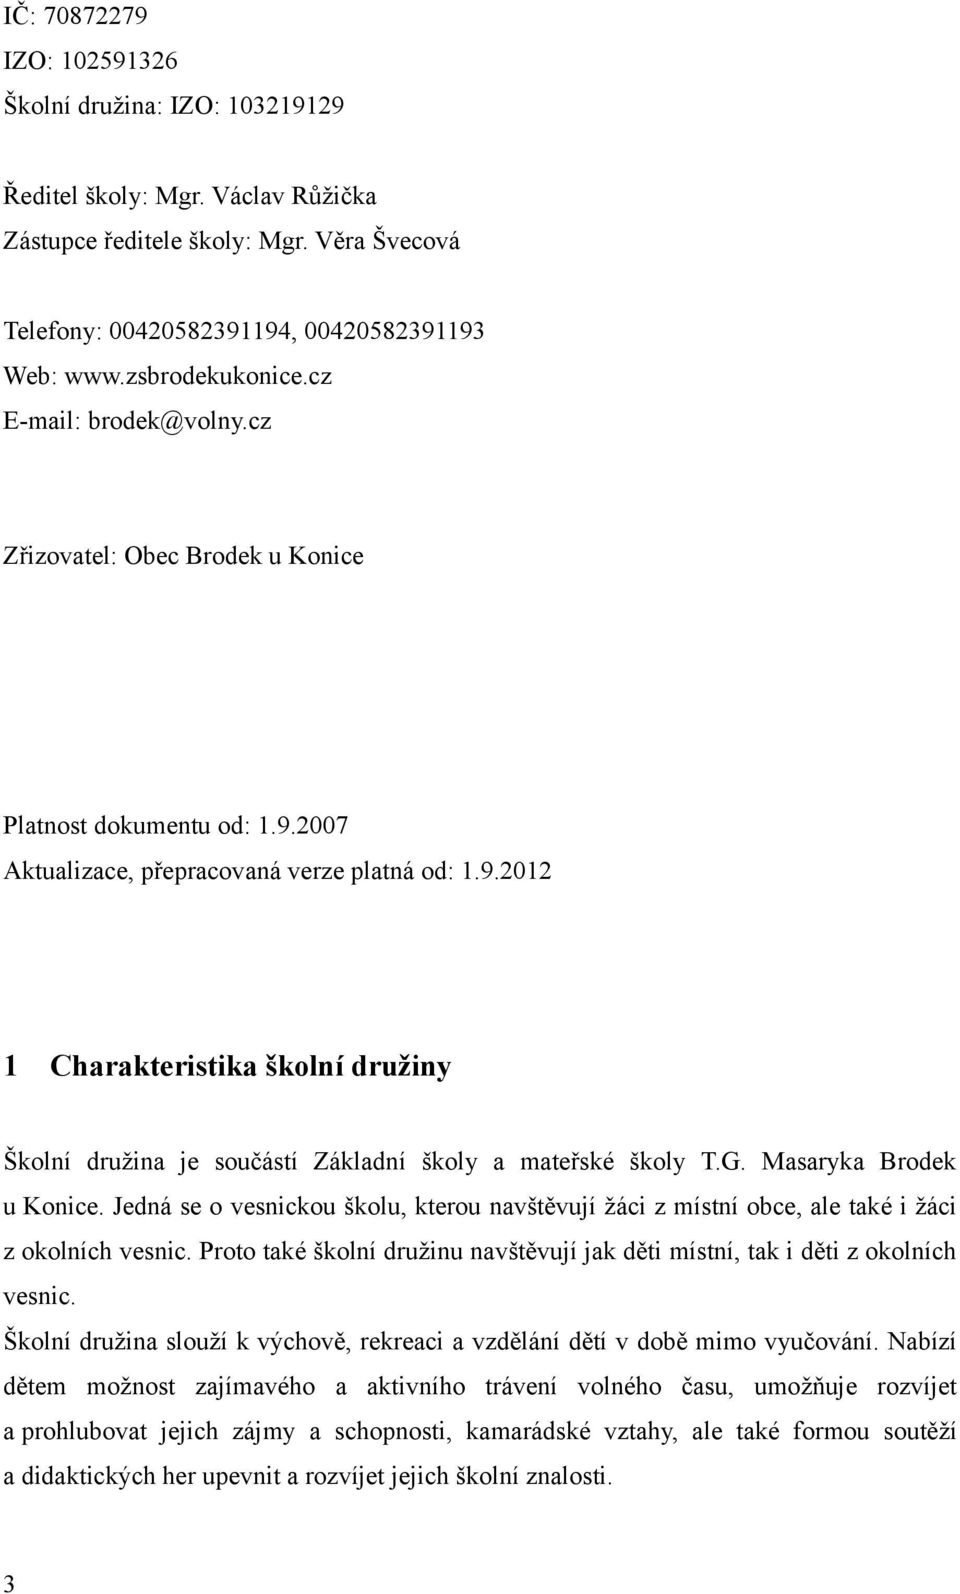 2007 Aktualizace, přepracovaná verze platná od: 1.9.2012 1 Charakteristika školní družiny Školní družina je součástí Základní školy a mateřské školy T.G. Masaryka Brodek u Konice.